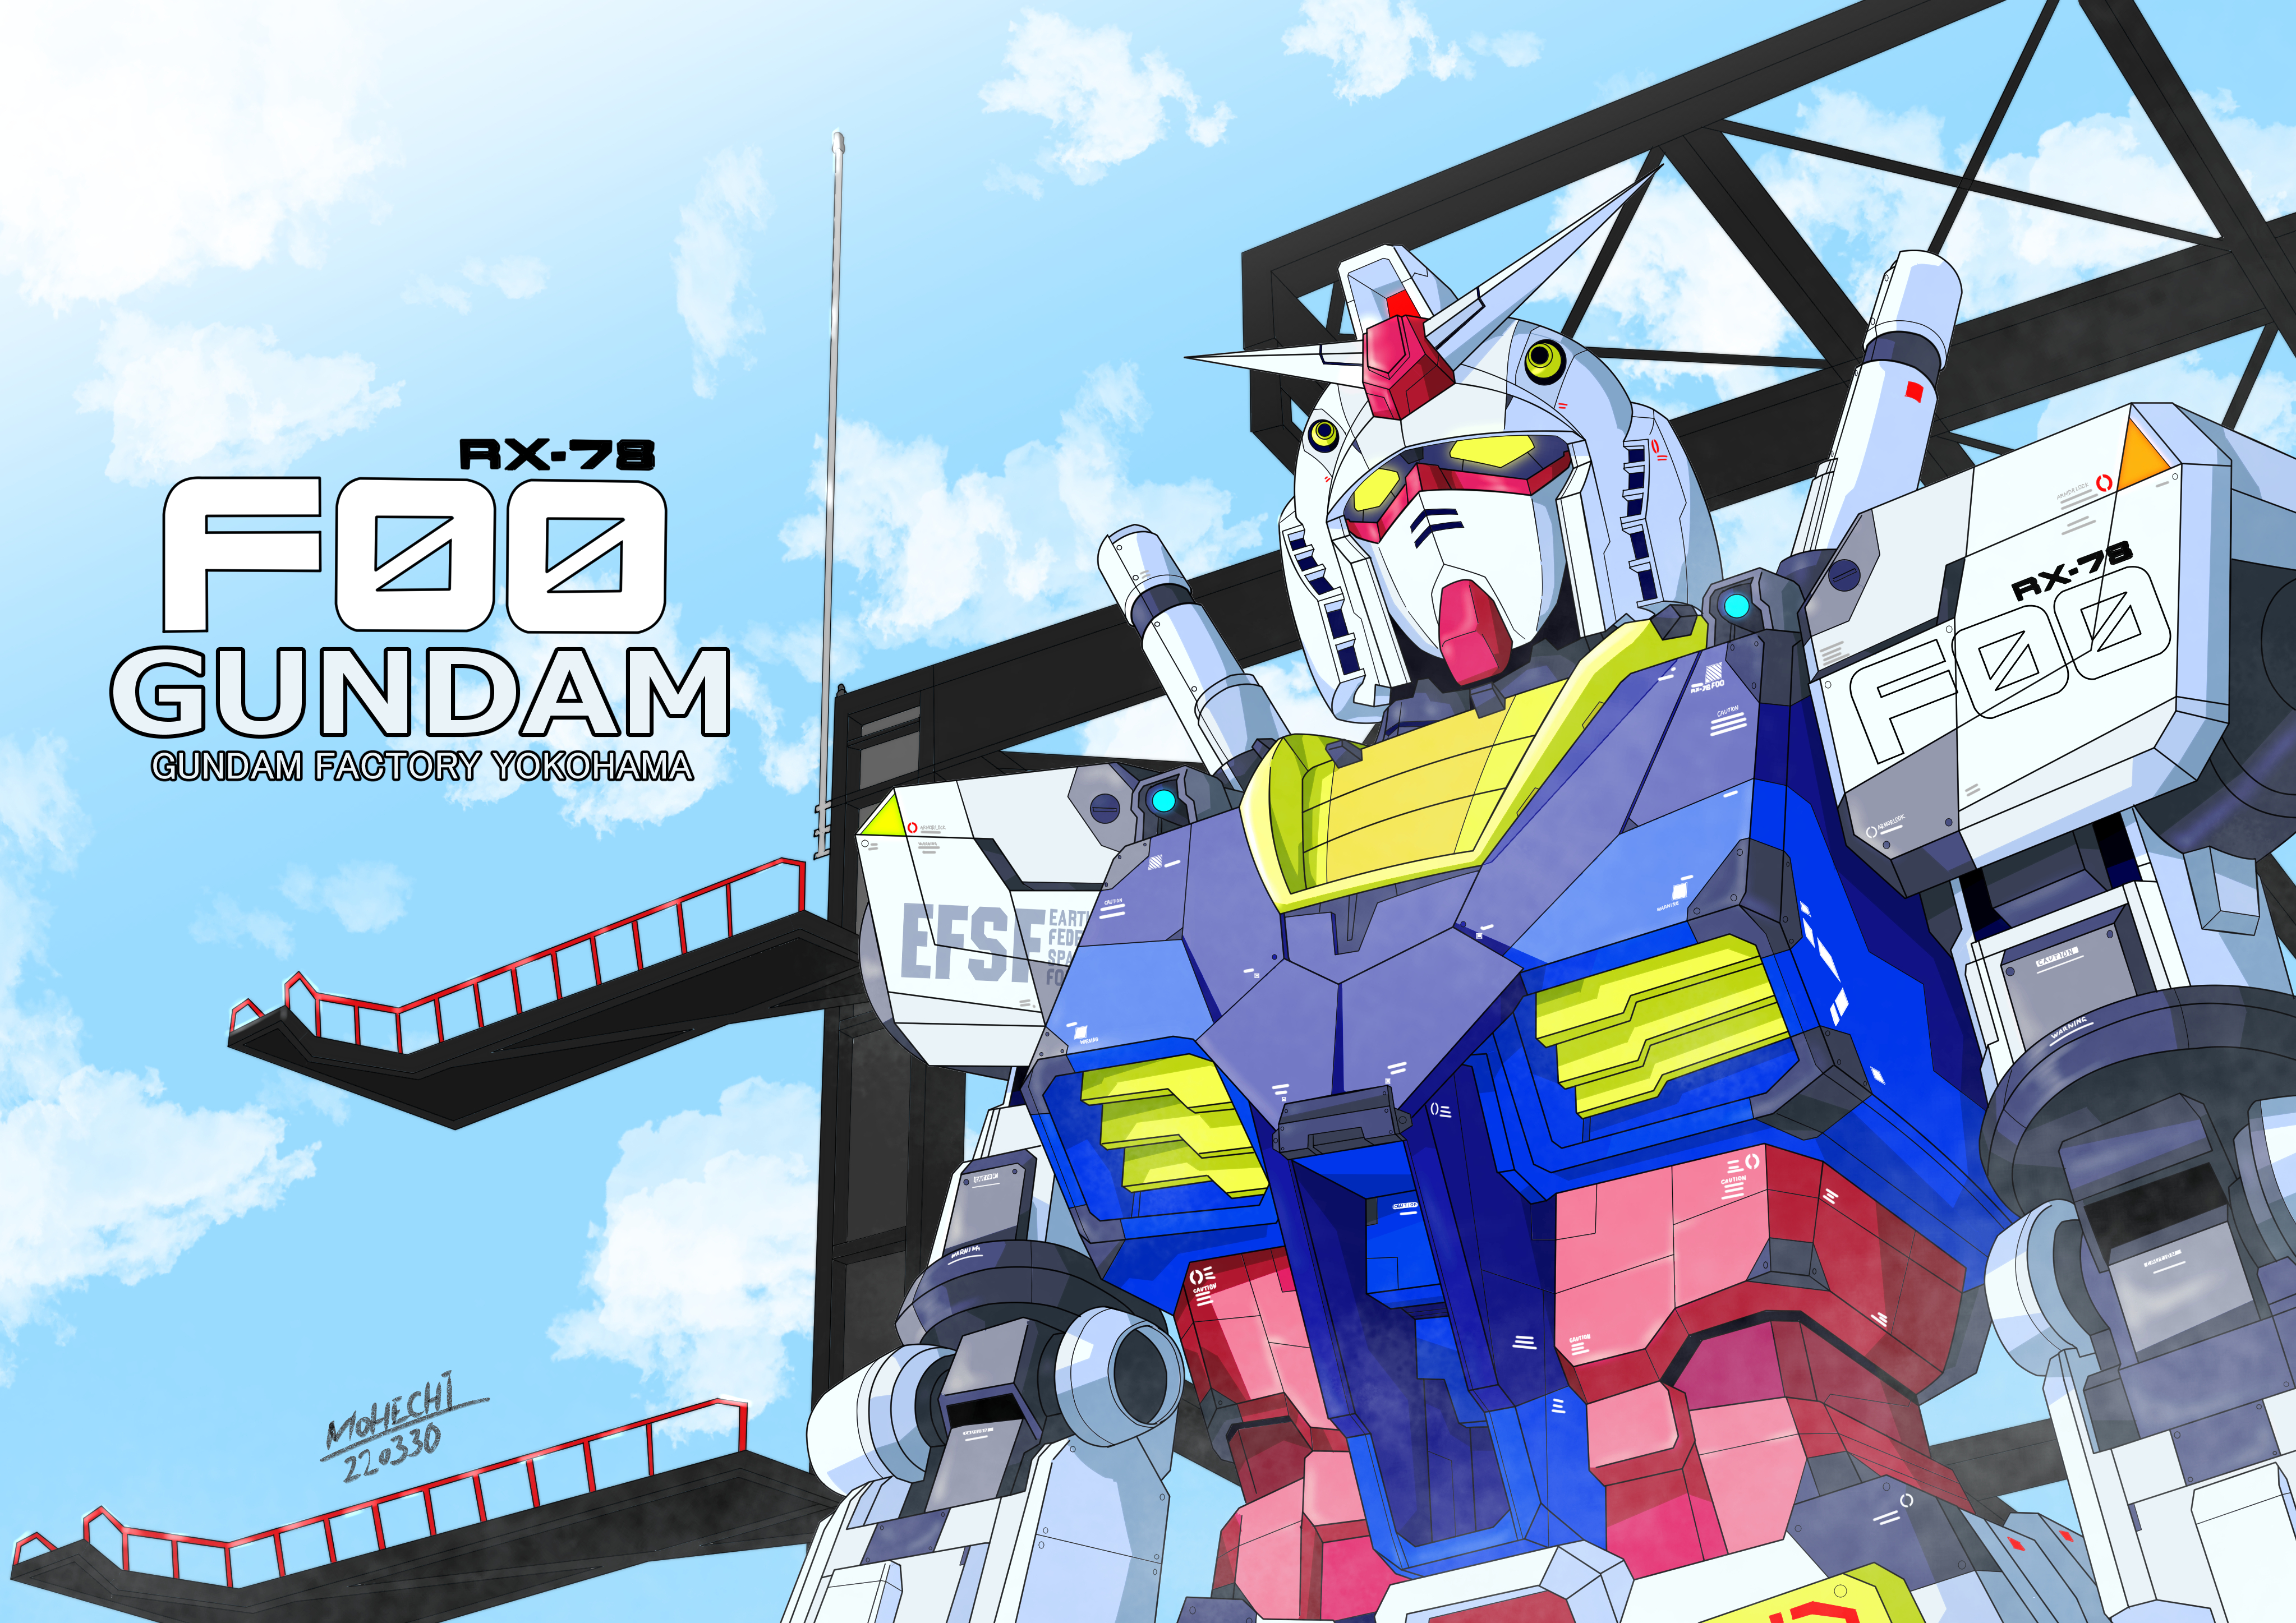 Anime Mechs Gundam Mobile Suit Gundam Super Robot Wars RX 78 Gundam Artwork Digital Art Fan Art 4093x2894